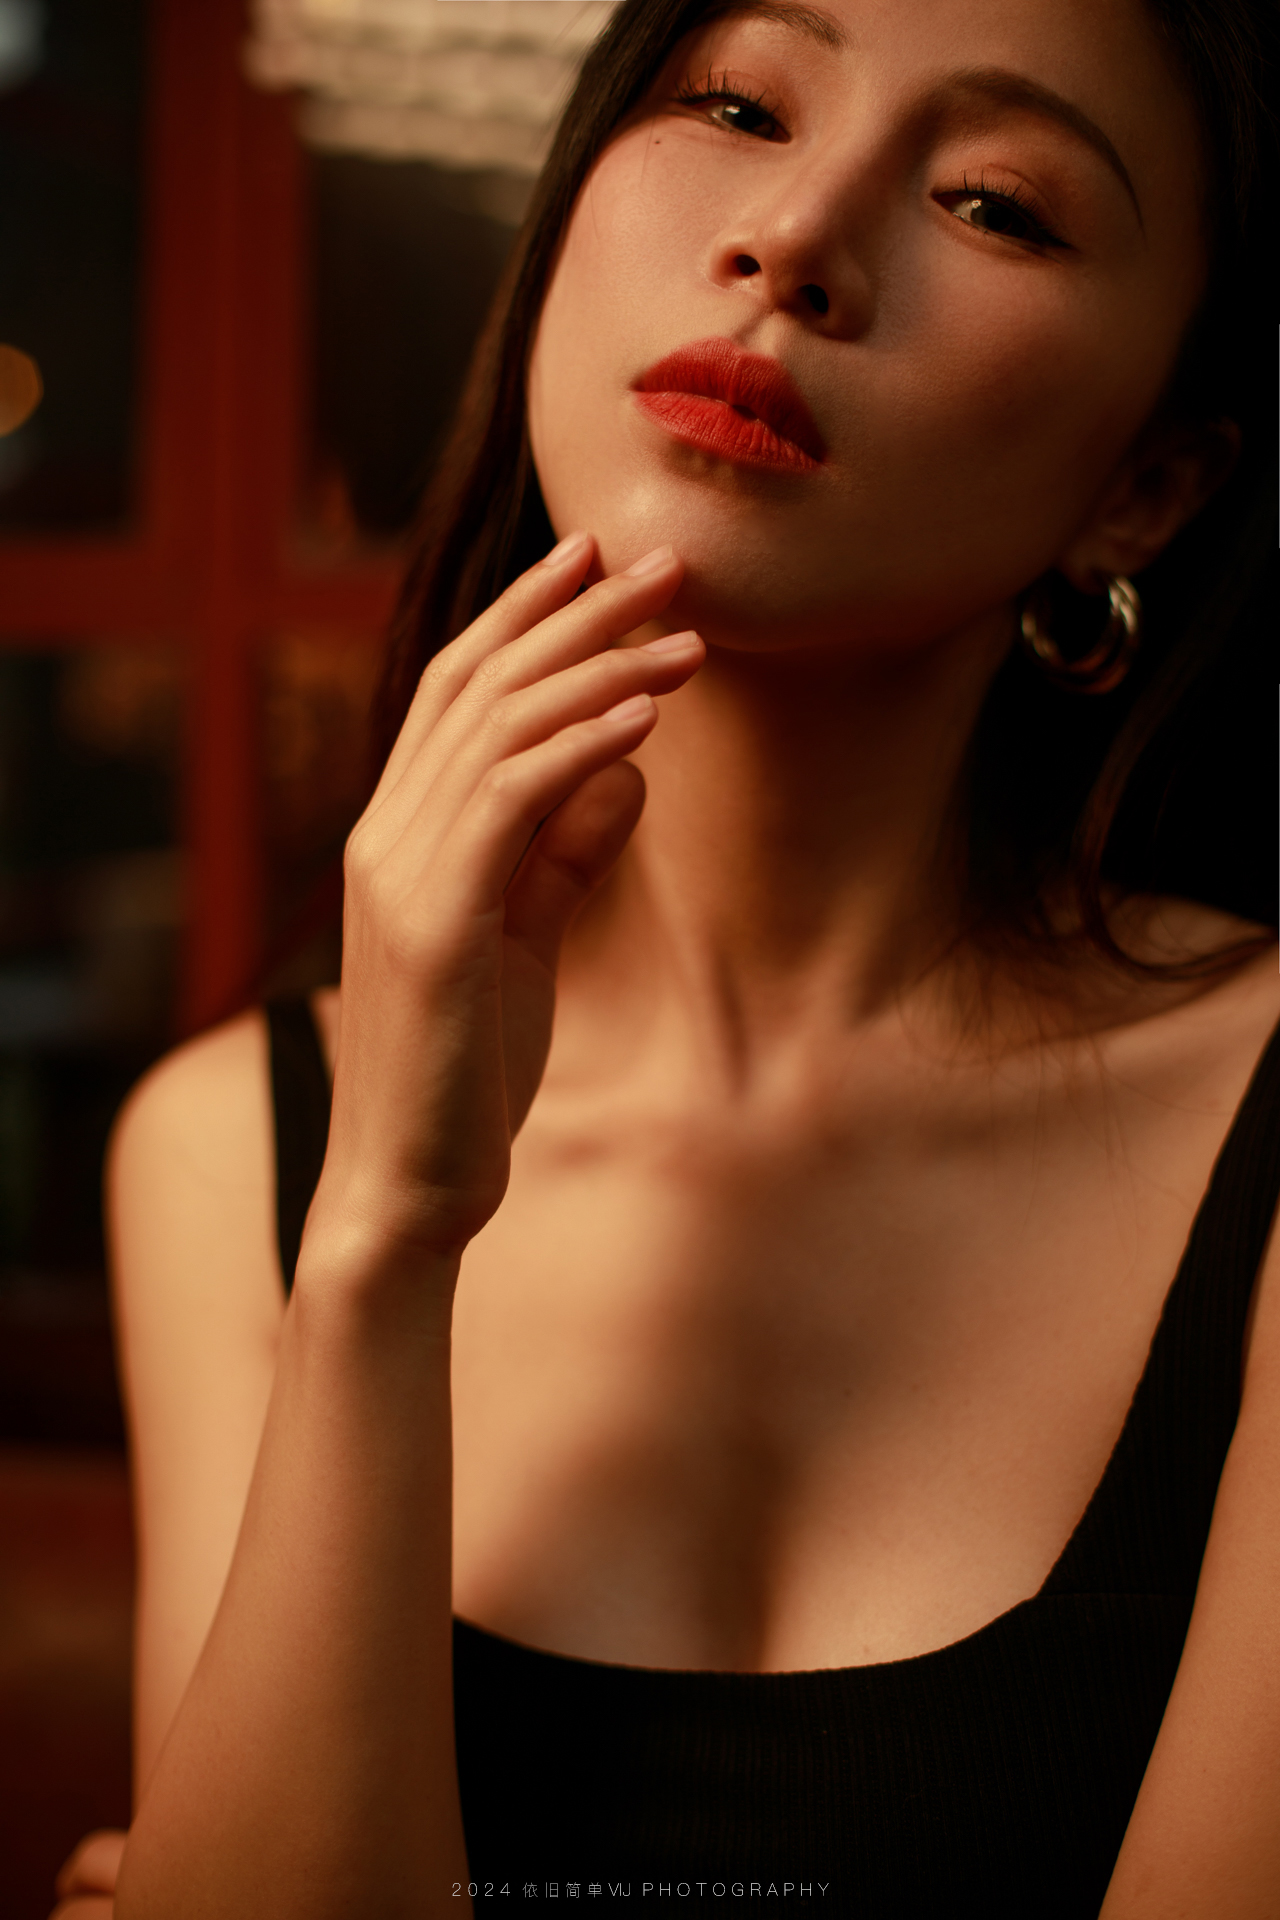 Vij Studio Women Asian Portrait Head Tilt Looking At Viewer Touching Face 1280x1920